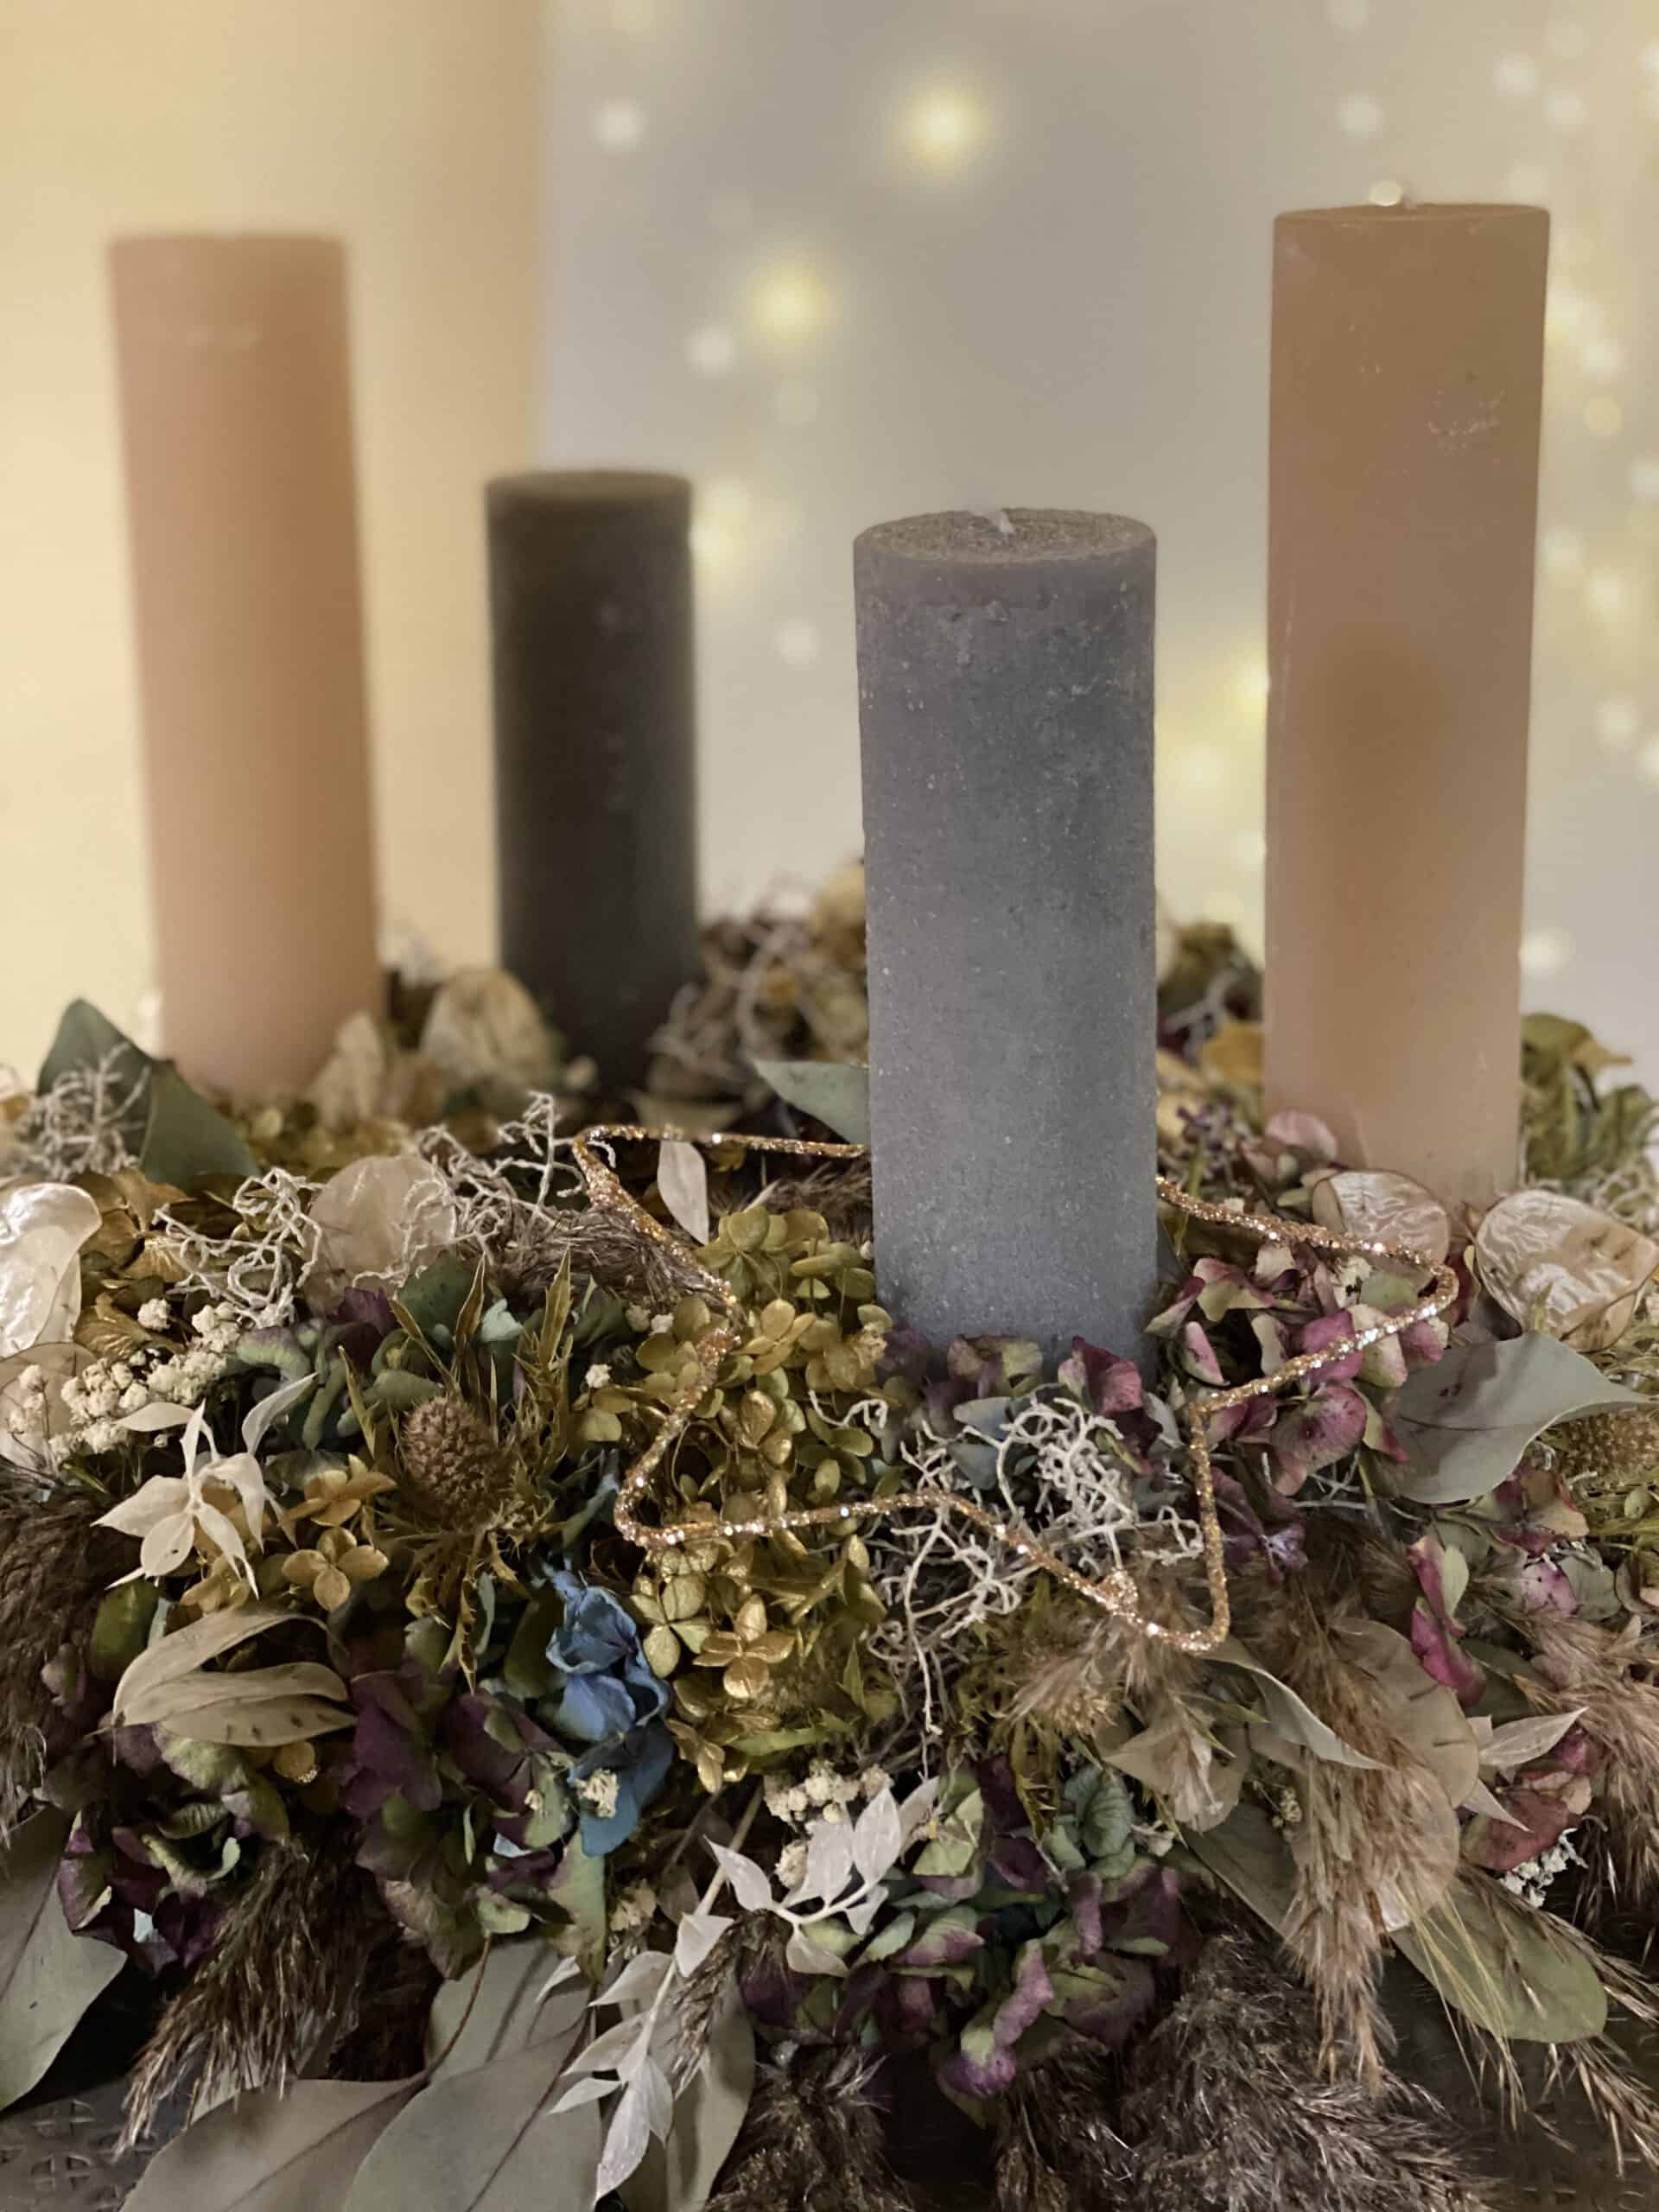 Adventskranz 2020 und moderne Weihnachtsdeko 2020 mit 4 Weizenkorn Kerzen in Farbe steingrau und nuss aus getrockneten Hortensien , Eukalyptus , Trockenblume von Gartenglück & Blütenkunst aus Pörnbach